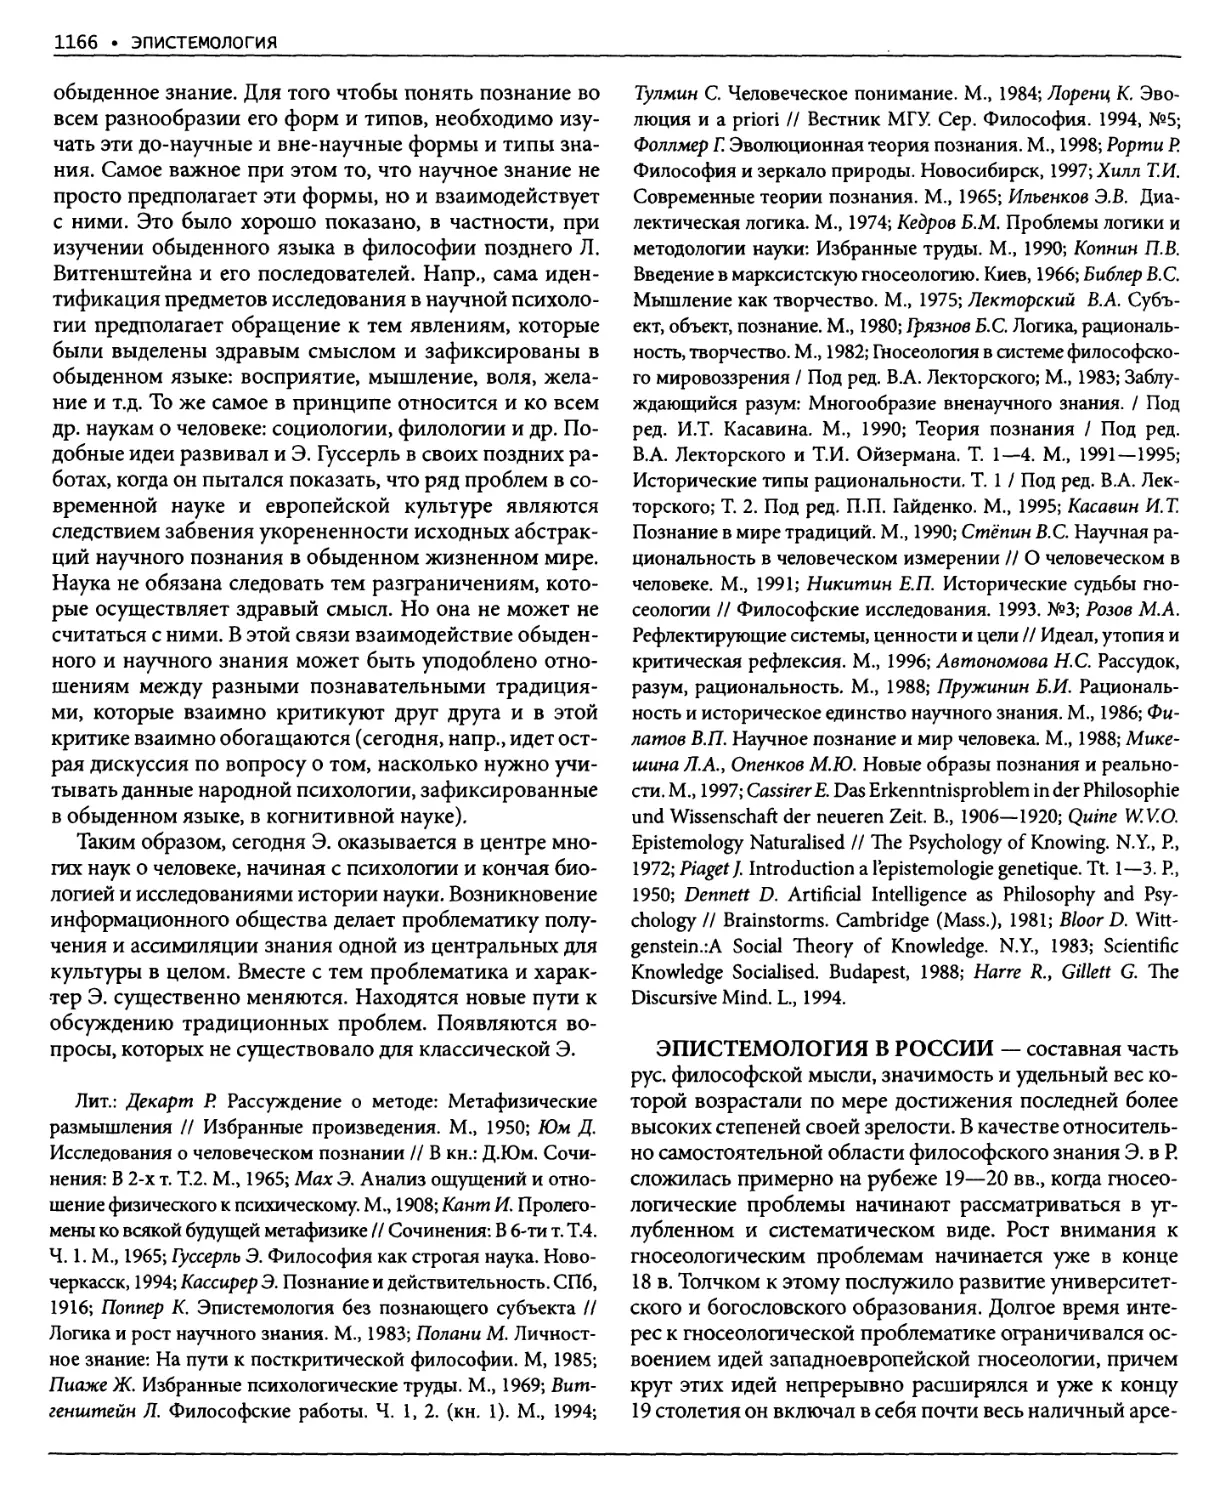 Эпистемология в России